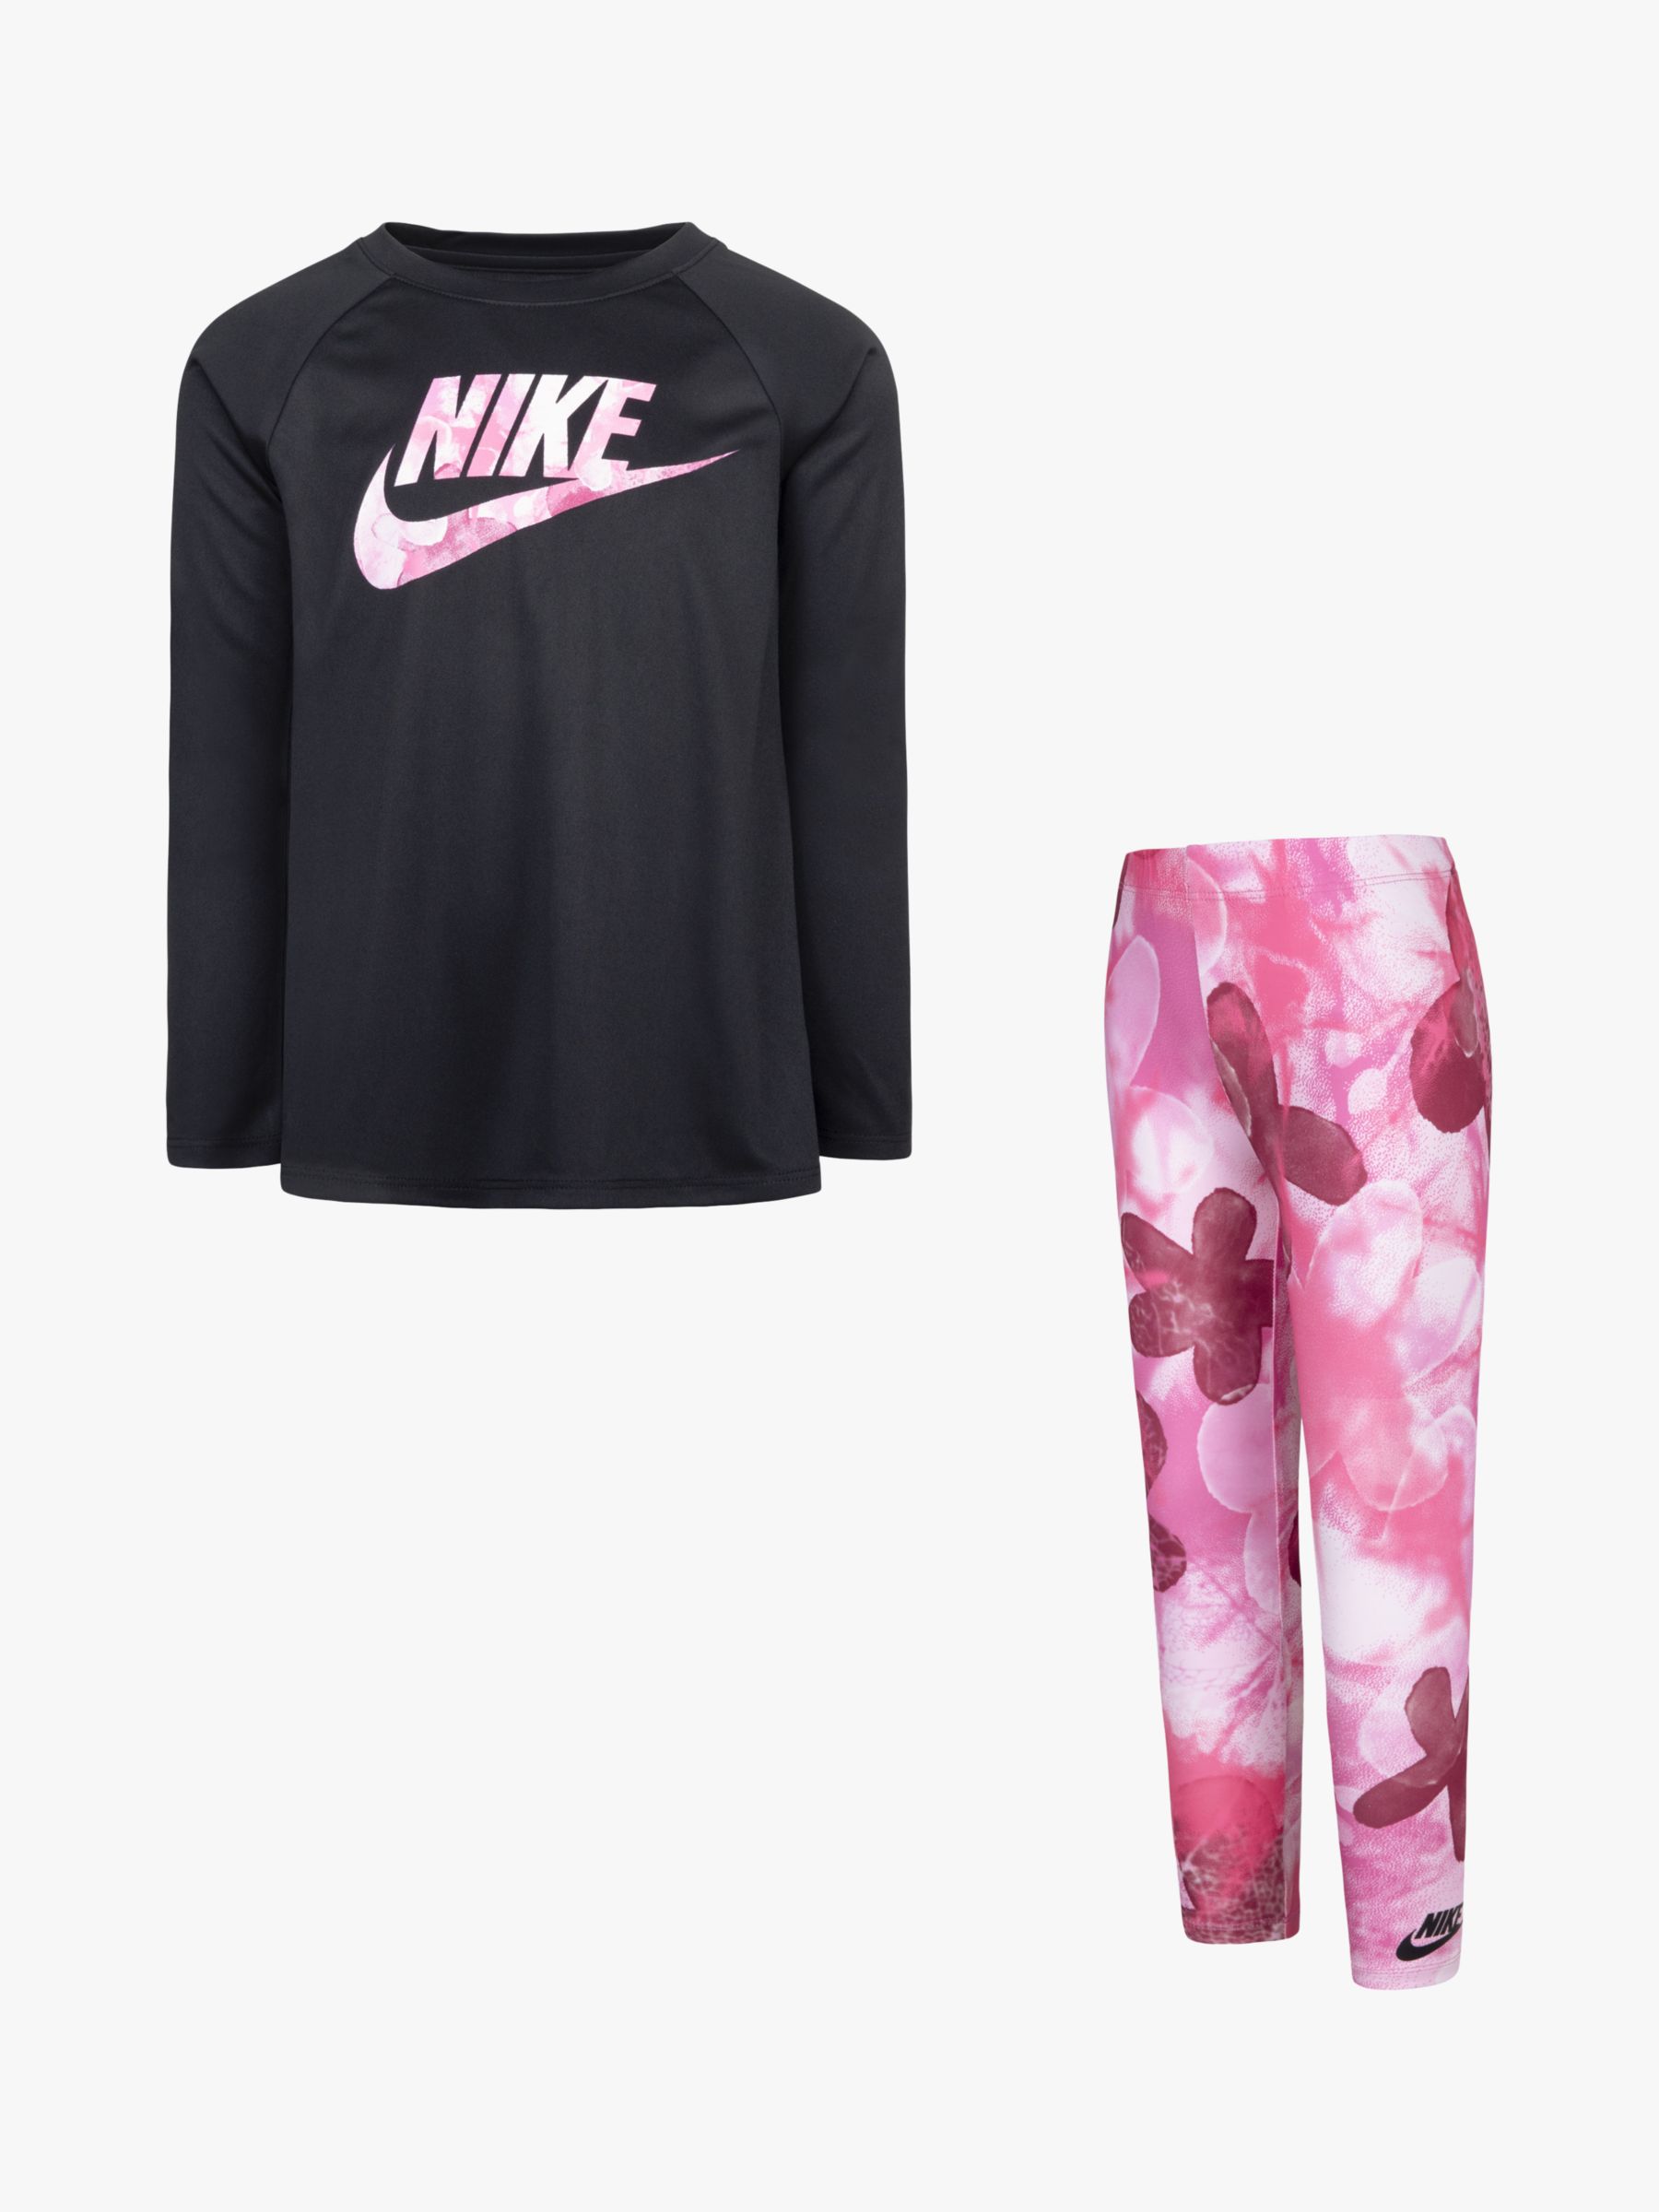 Nike Kids' Long Sleeve Top & Printed Leggings Set, Pink, 2-3 years